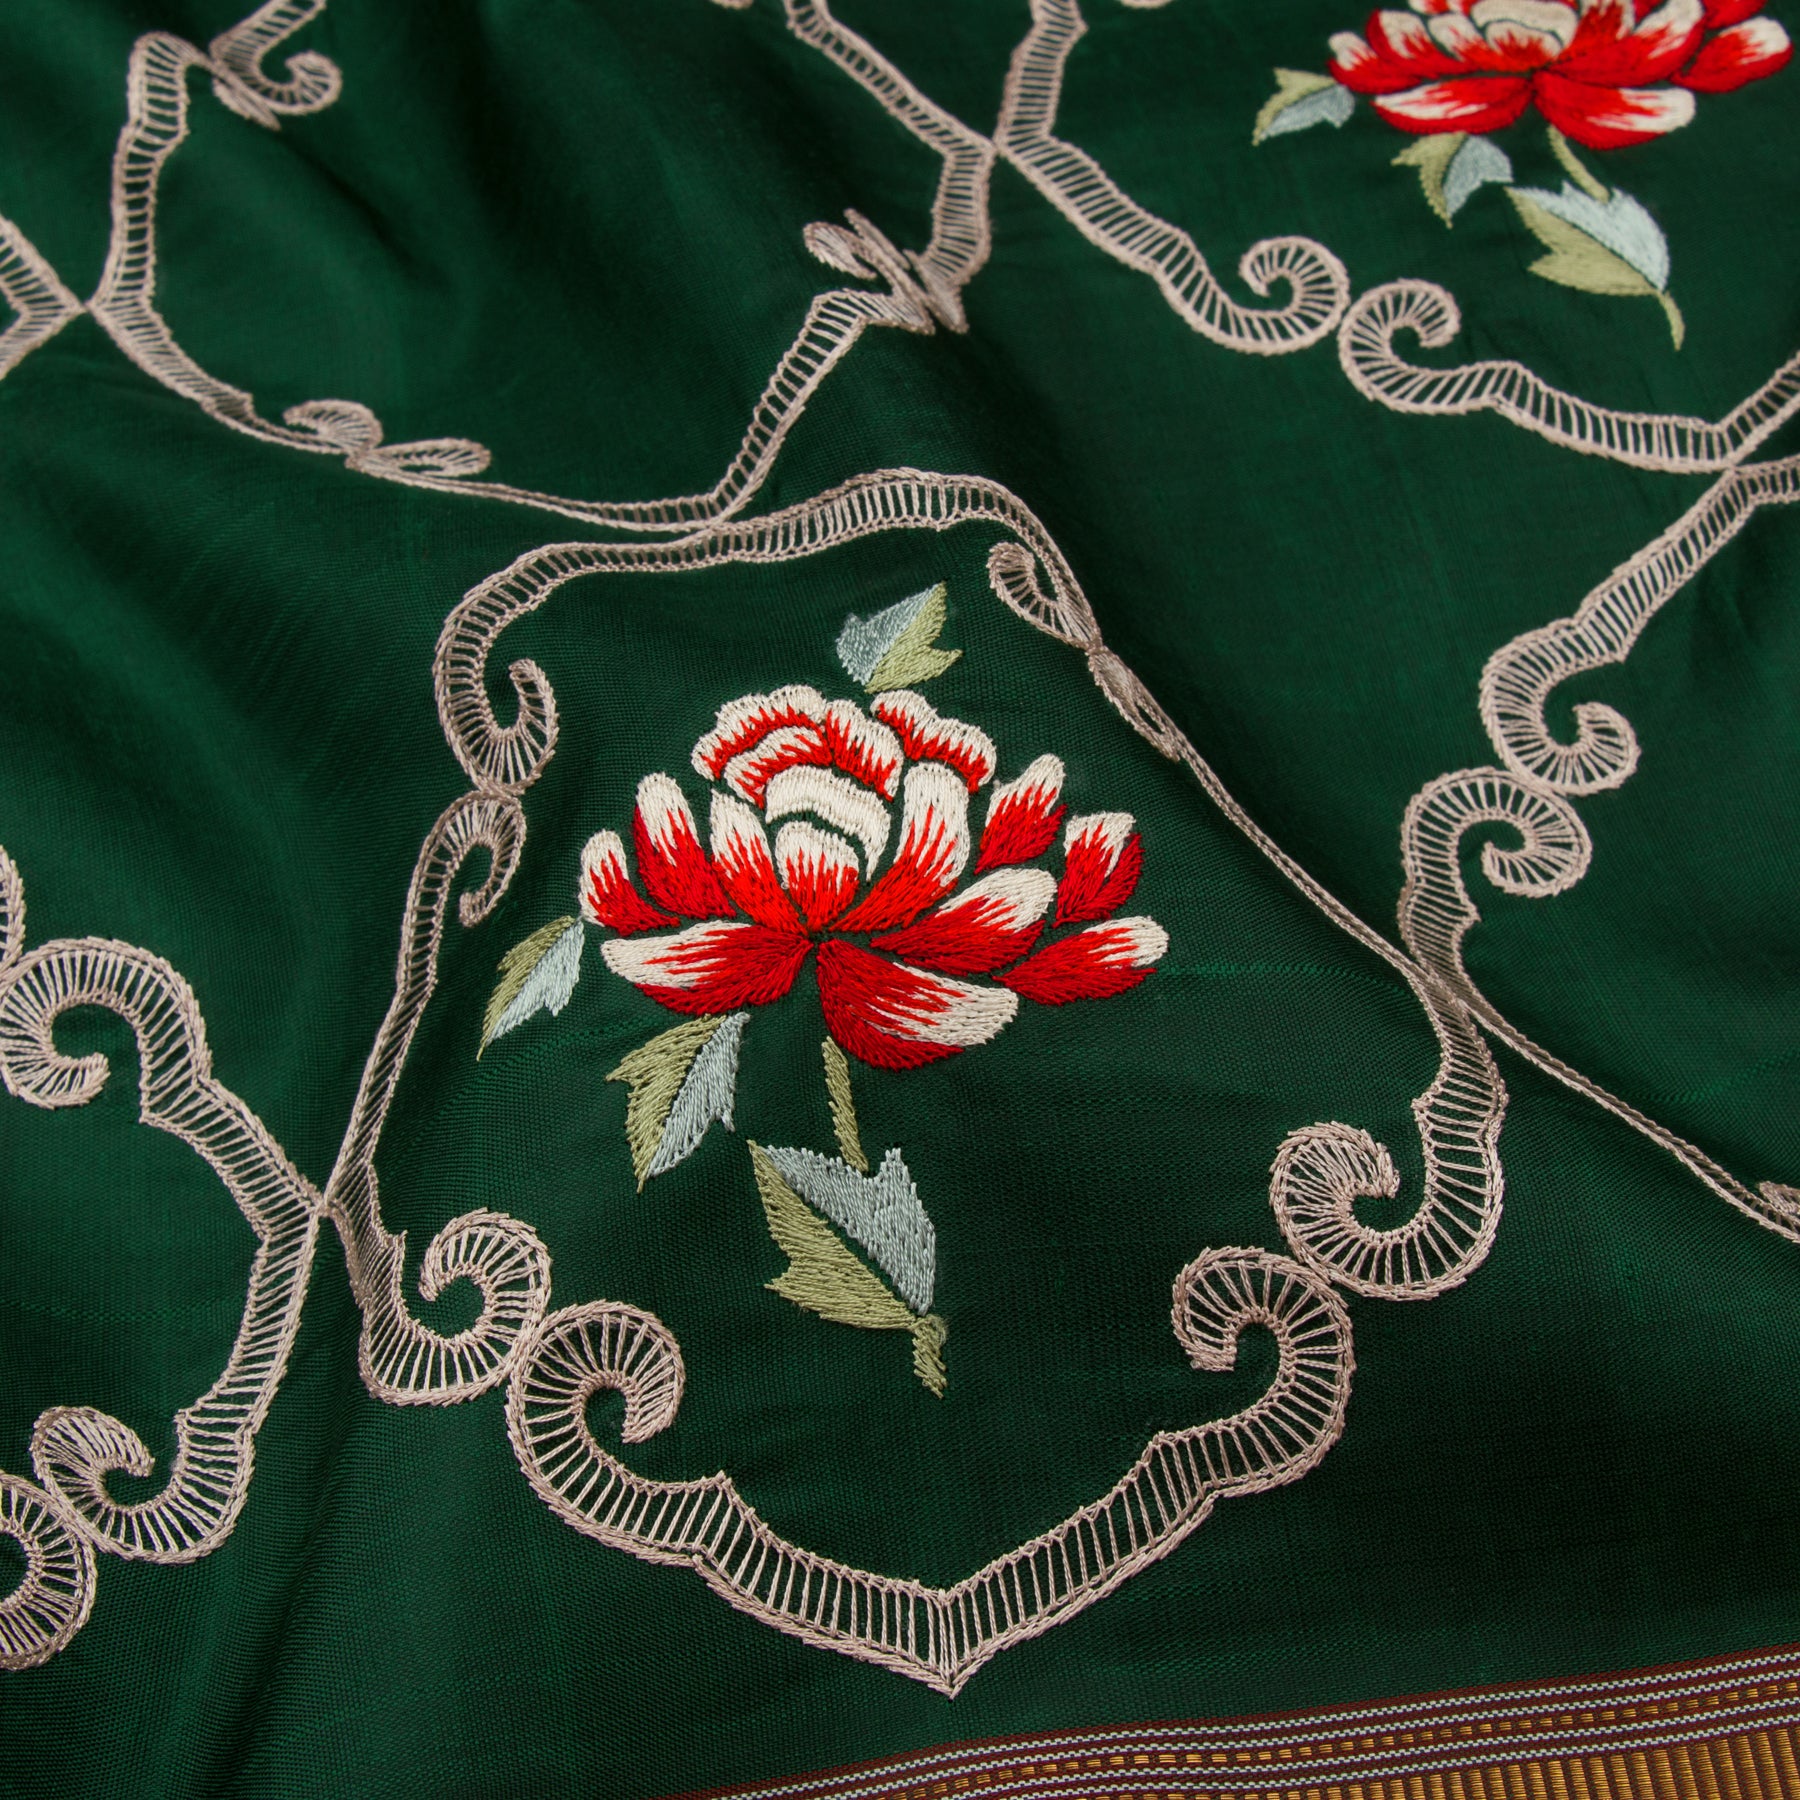 Kanakavalli X Ashdeen Kanjivaram Silk Sari 19-110-HS001-00169 - Fabric View